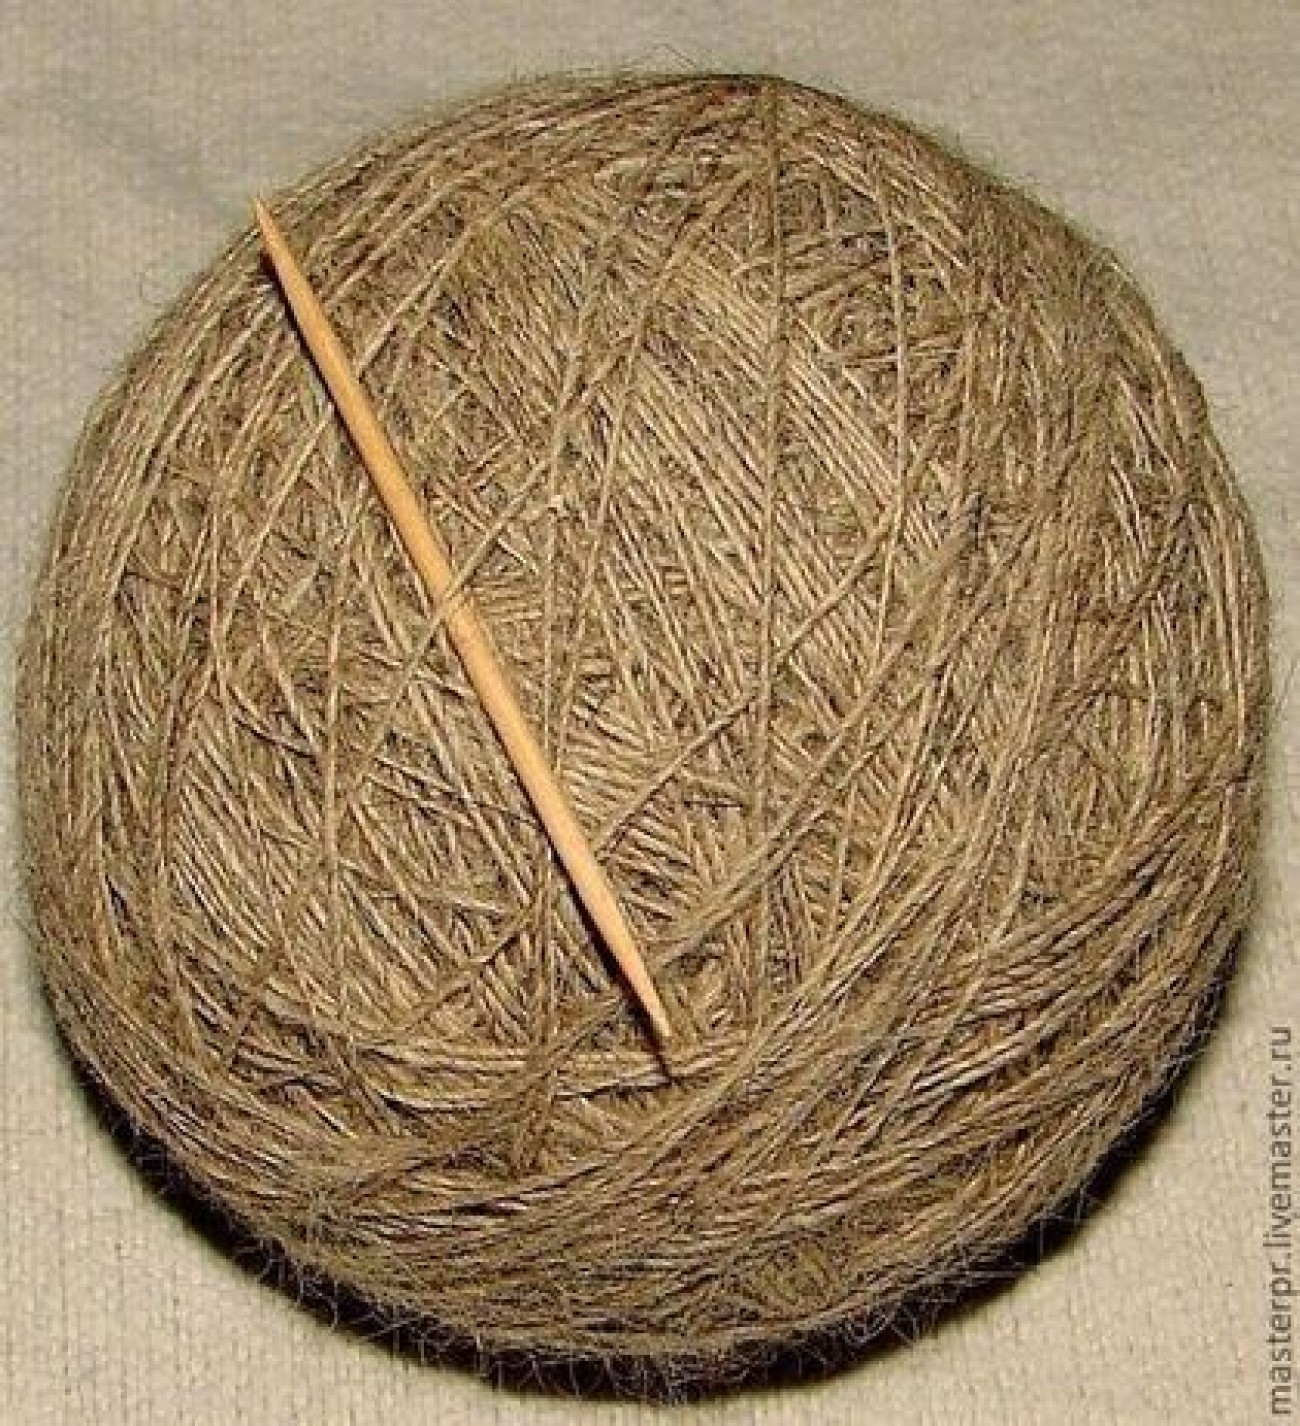 Пряжа ФЭ тонкая теплая для ручного вязания.Одинарная нитка.